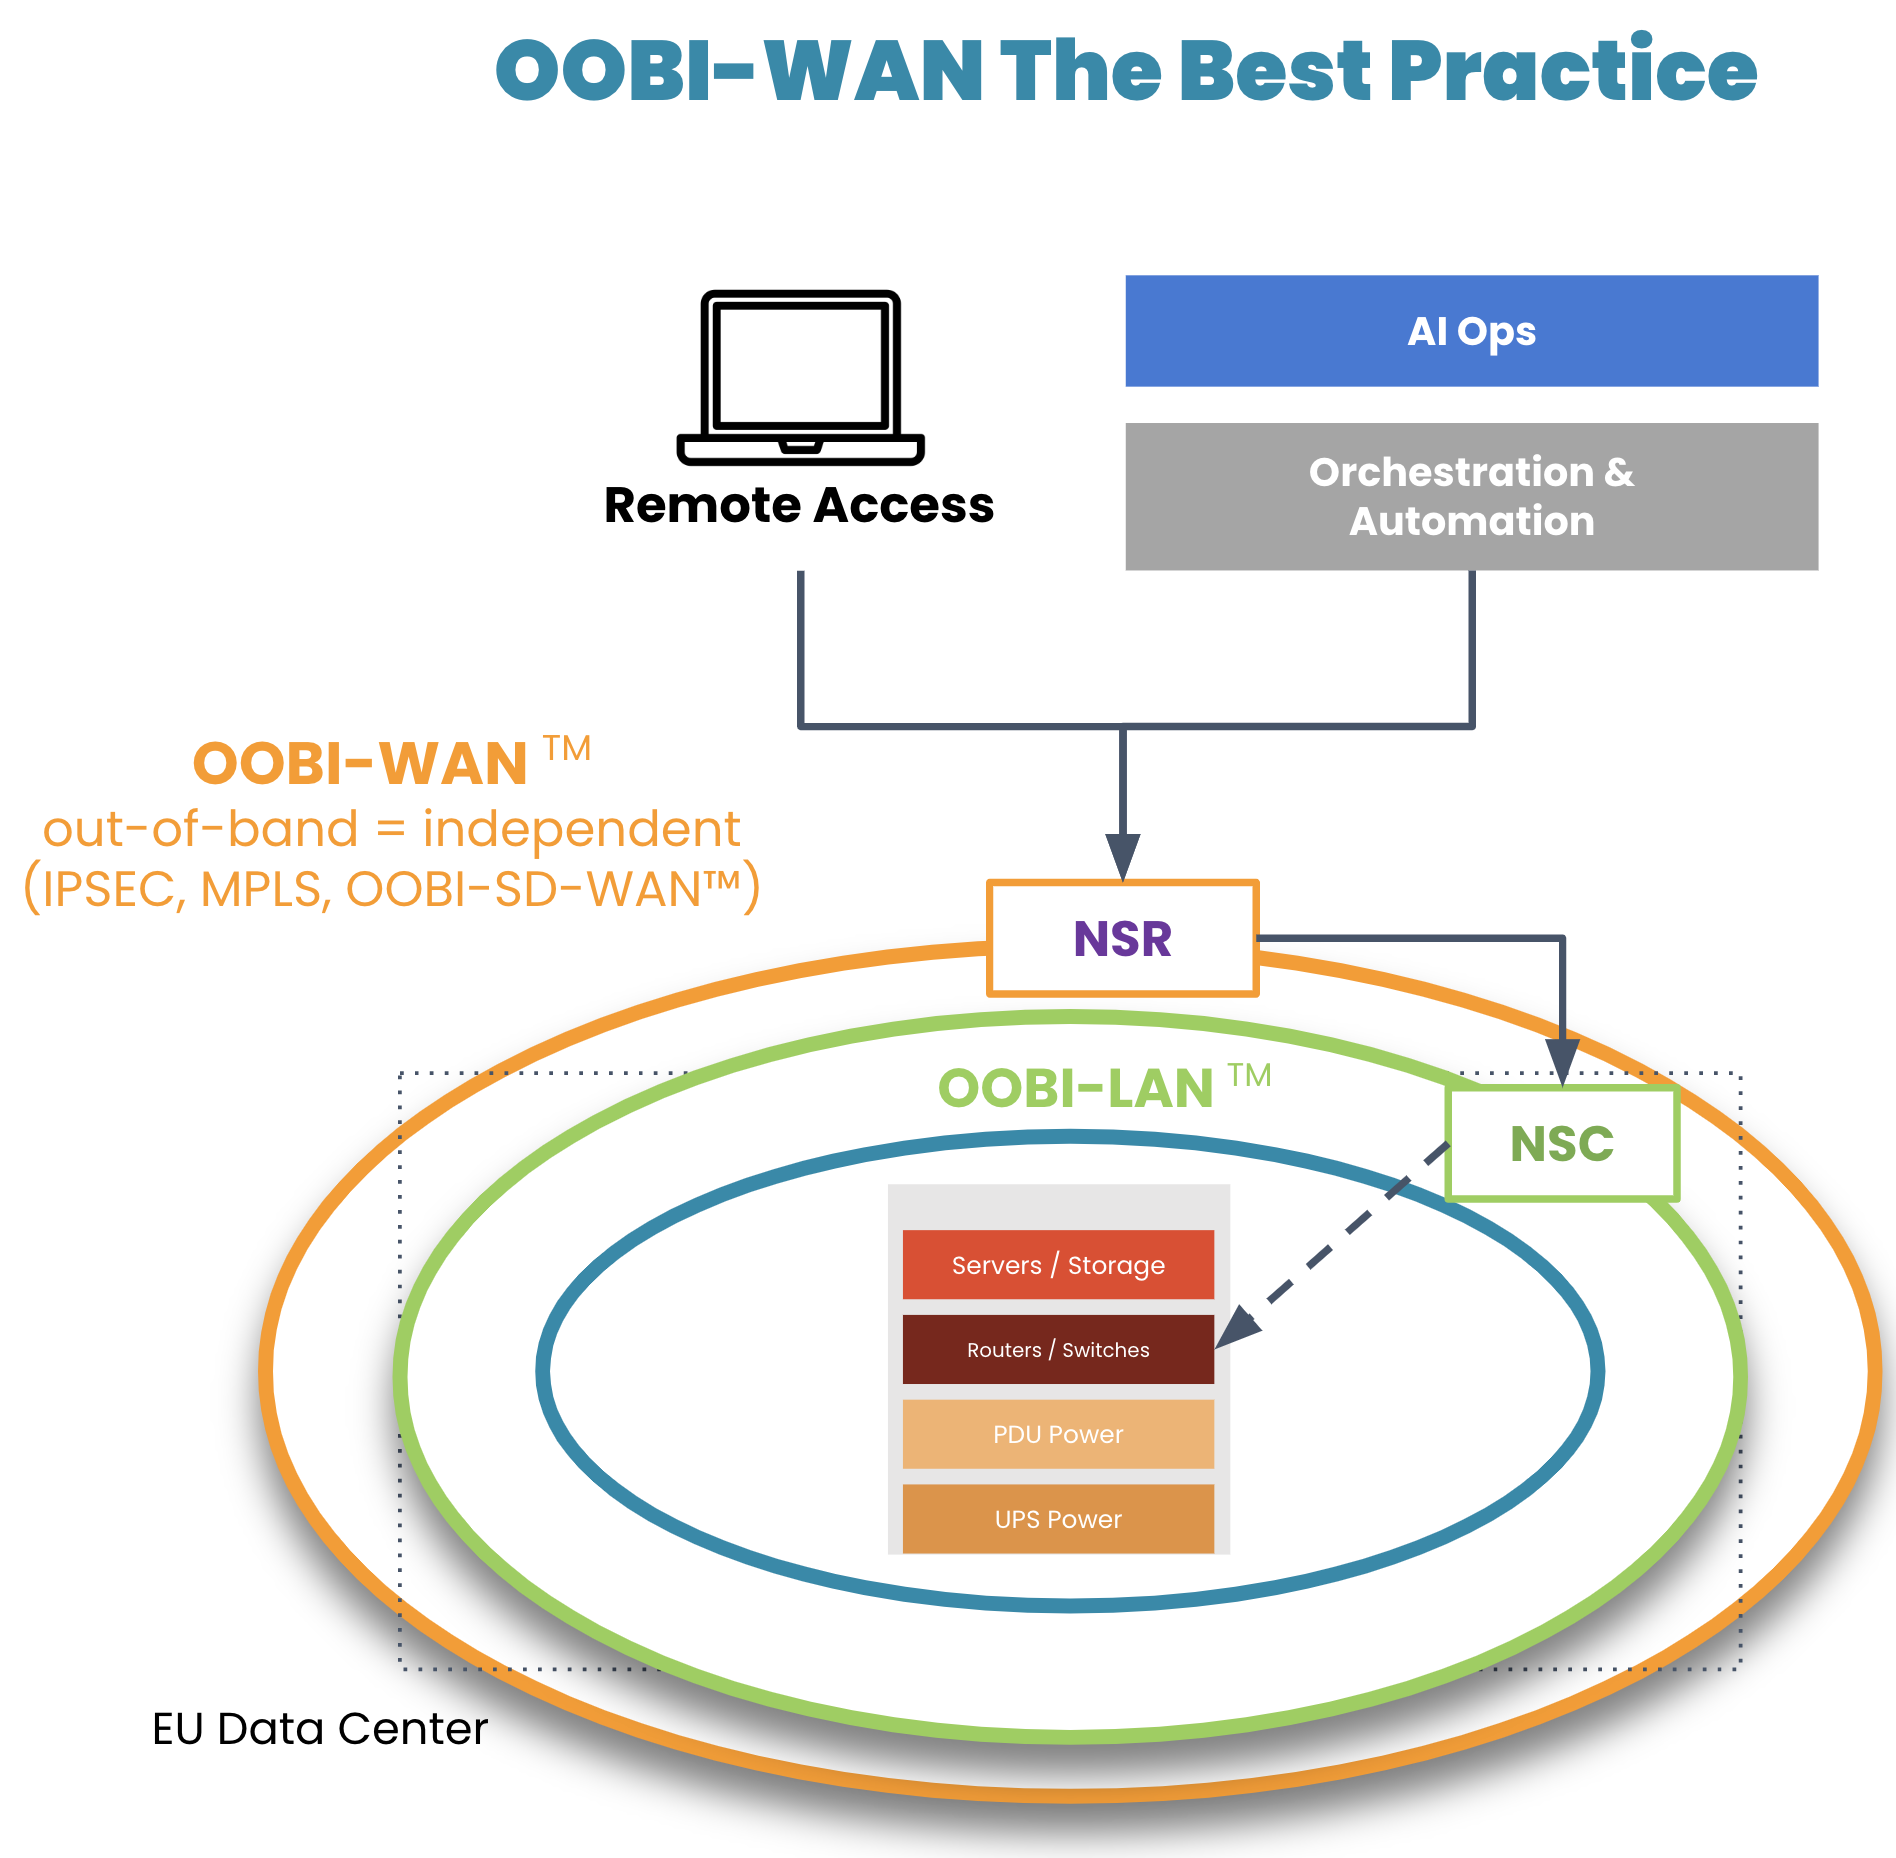 OOBI-WAN is the WAN best practice